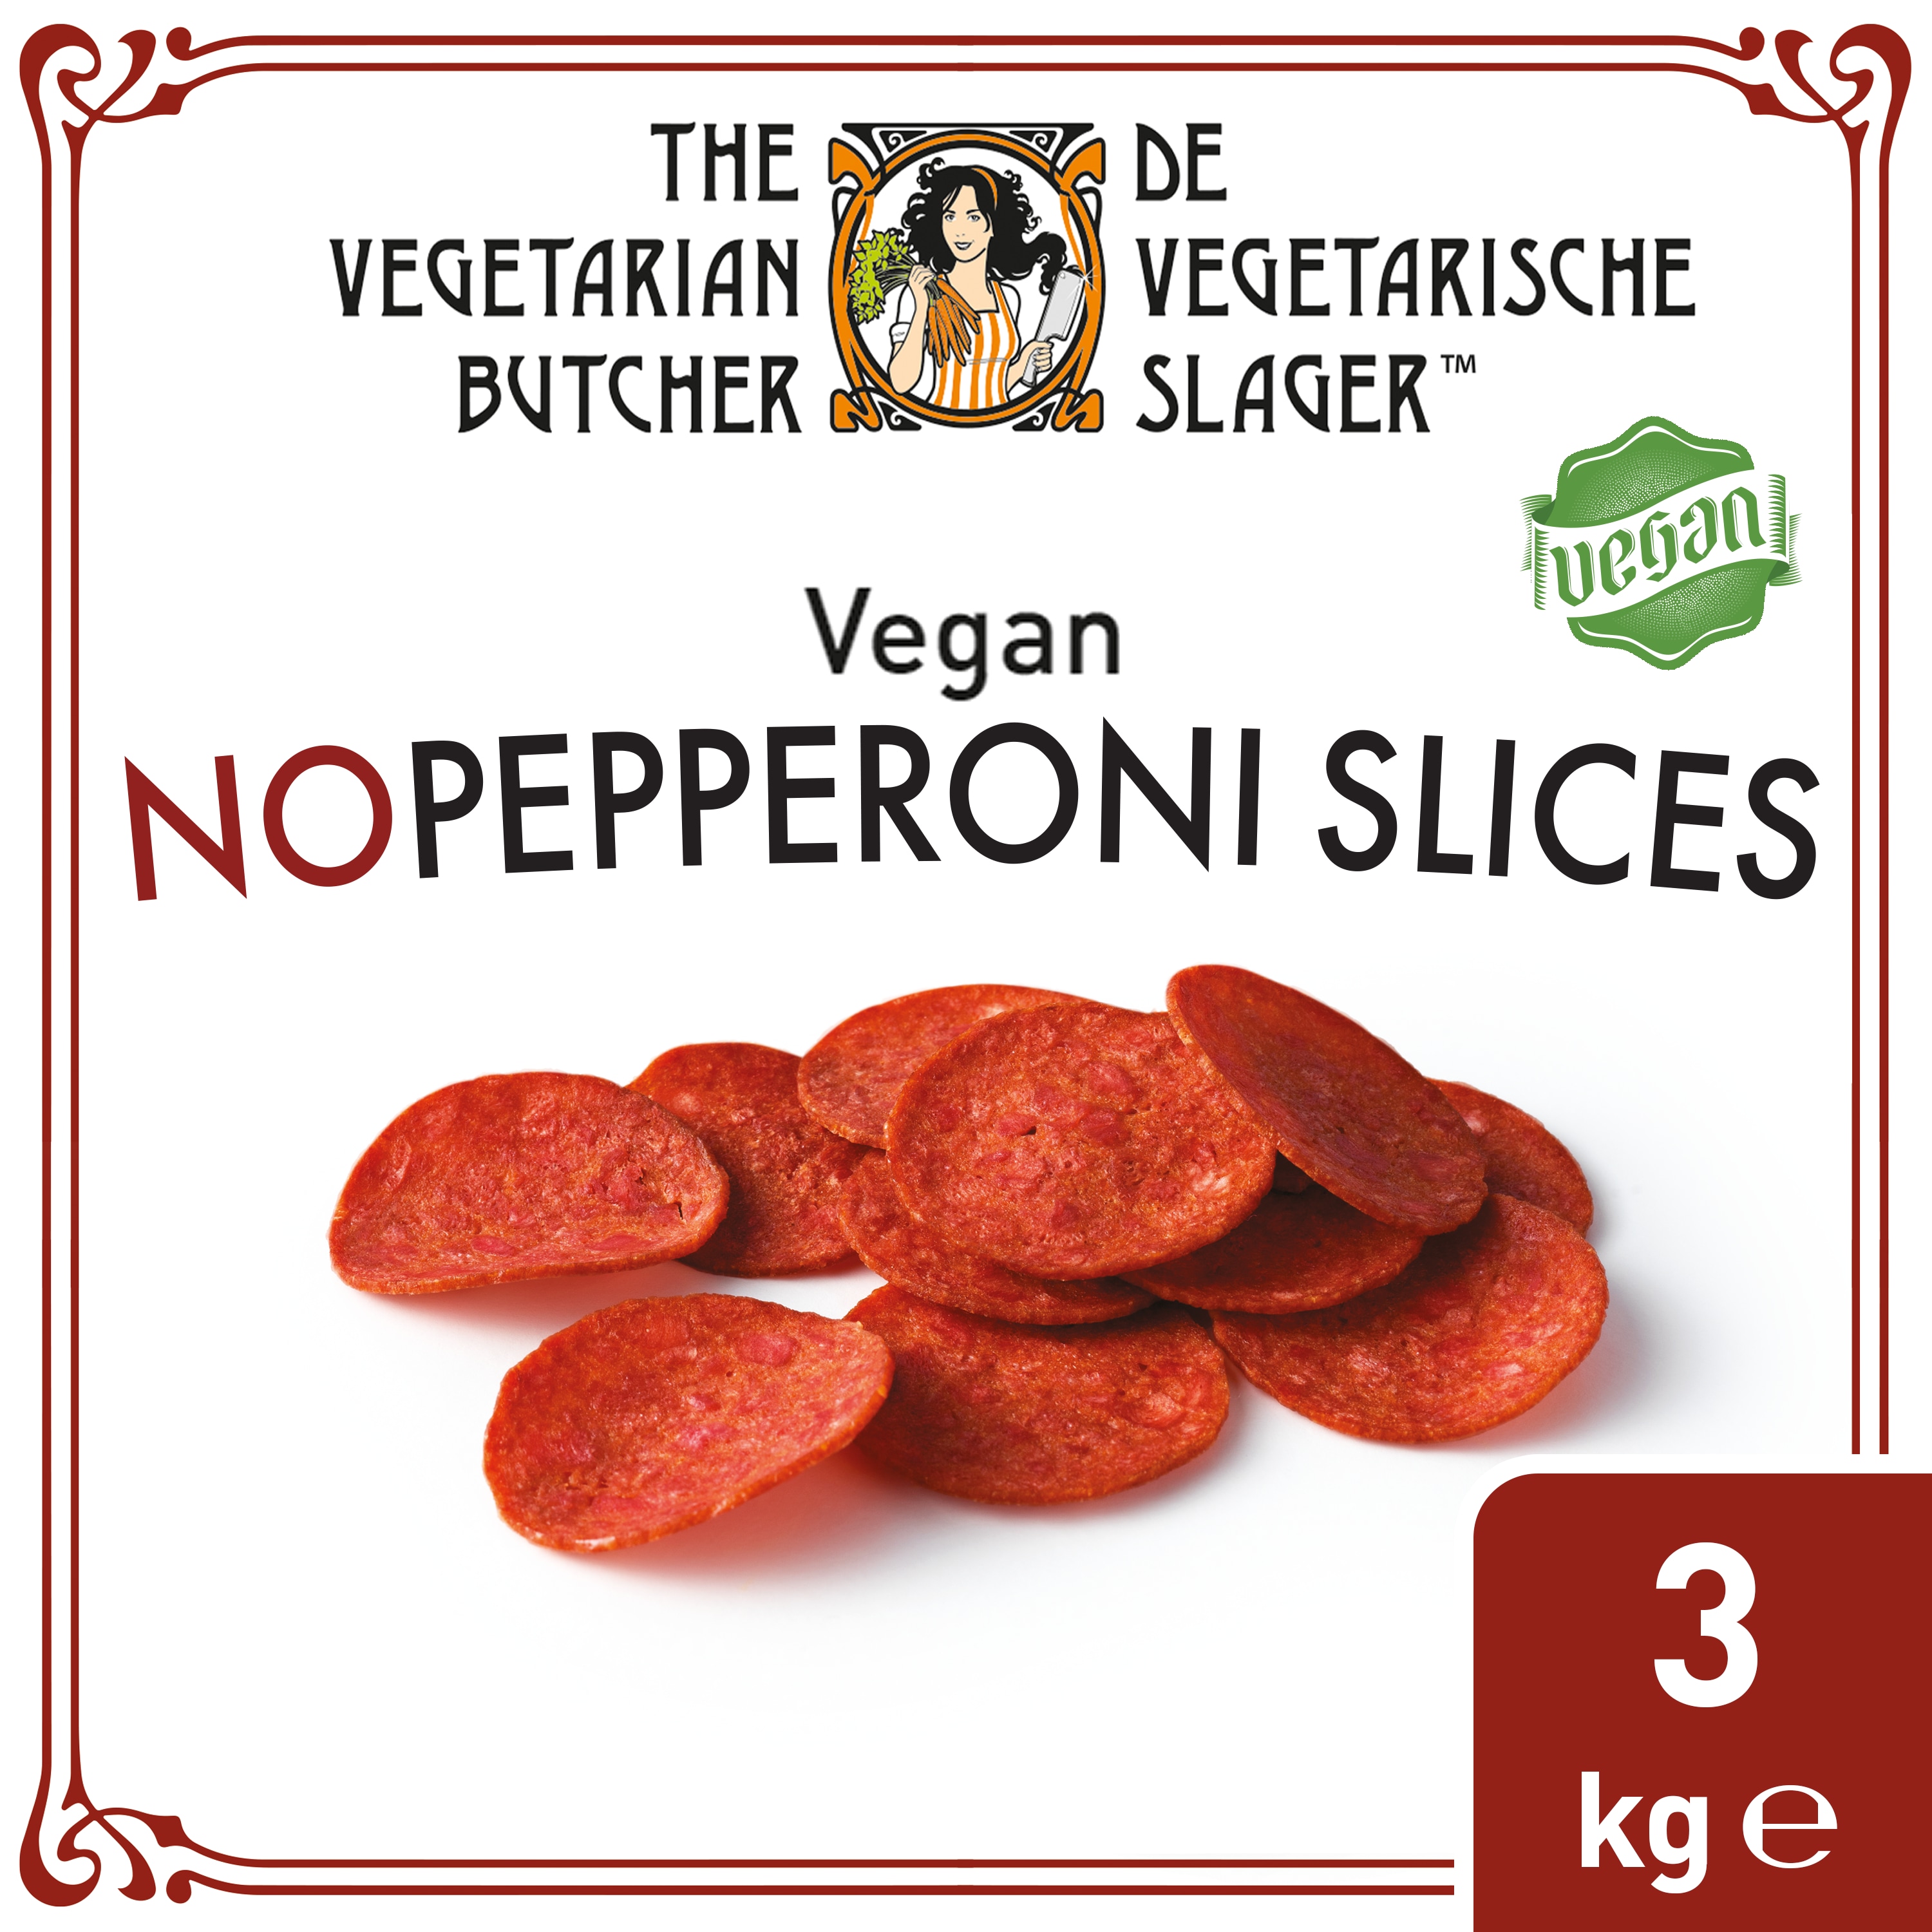 De Vegetarische Slager Veganistische Pepperoni Plakjes 6x500 g - 